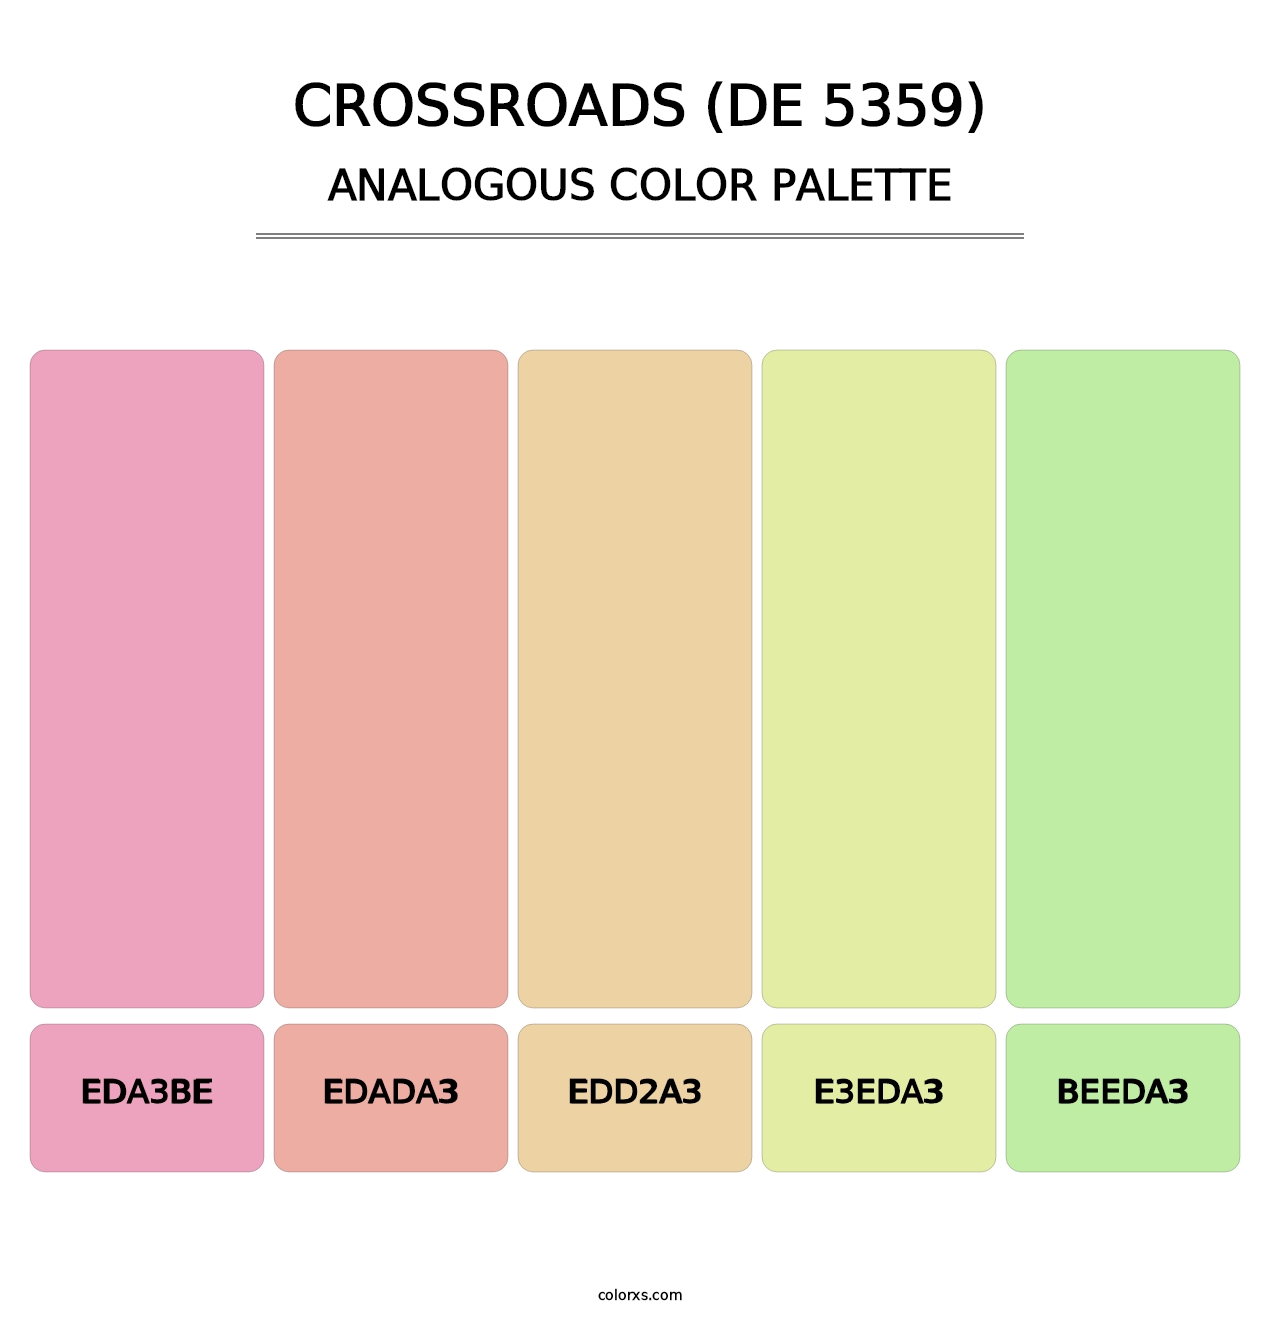 Crossroads (DE 5359) - Analogous Color Palette